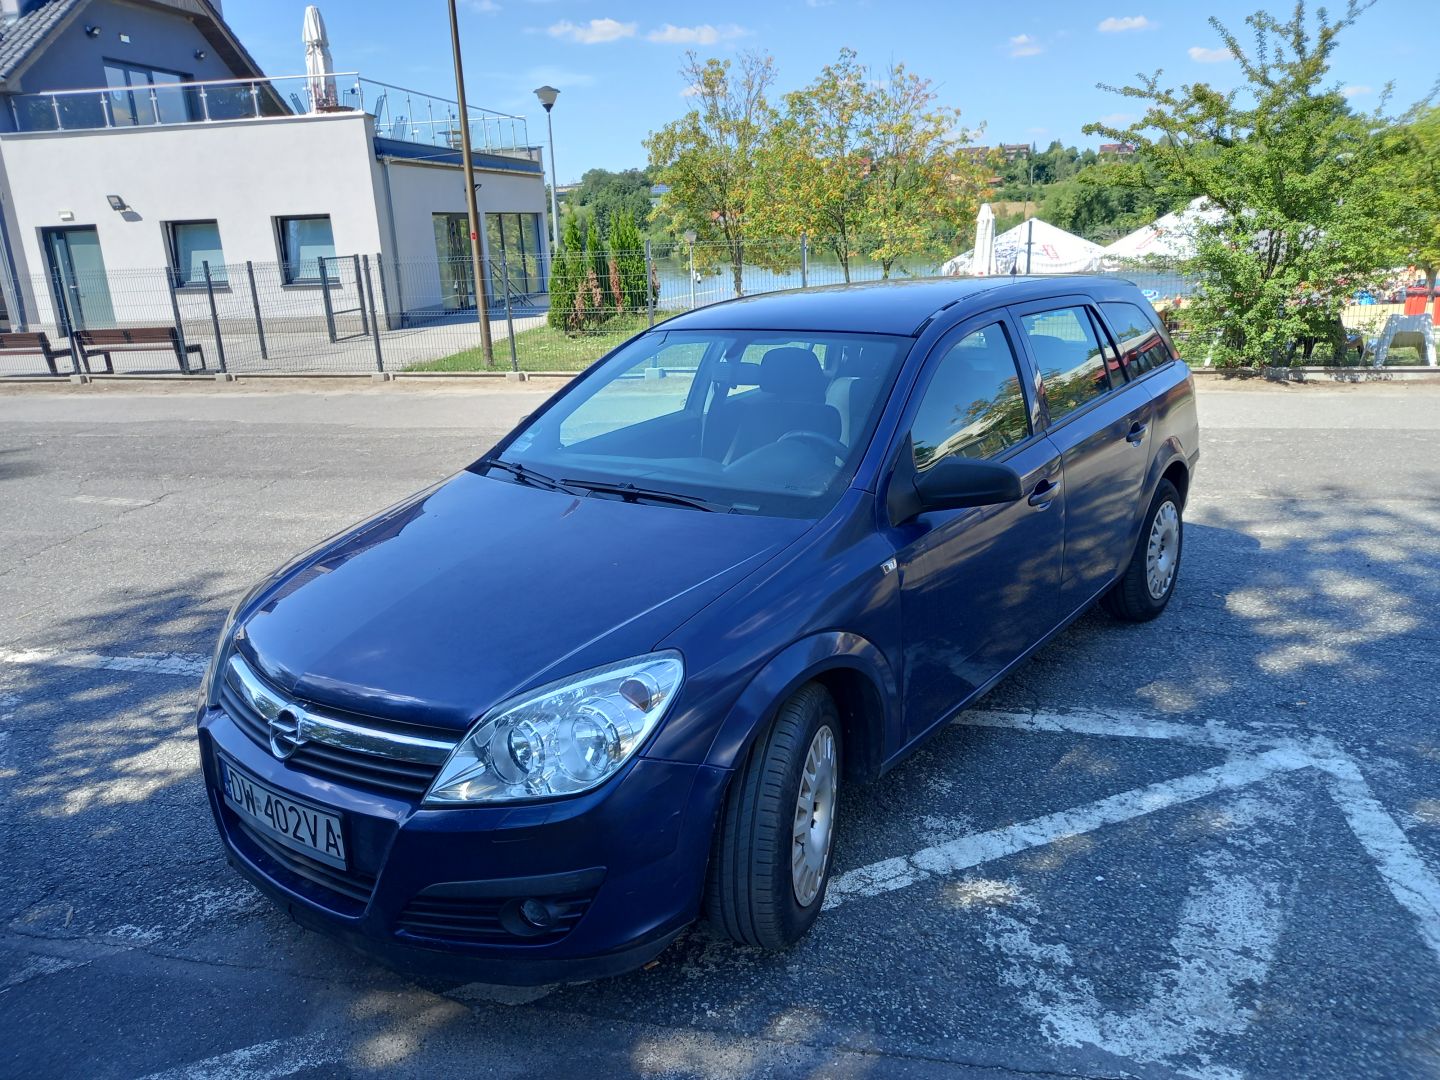 Sprzedam Opel Astra H kombi 2007 rok 1.7 CDTI 101 KM DIESEL Wroclaw - Zdjęcie 1